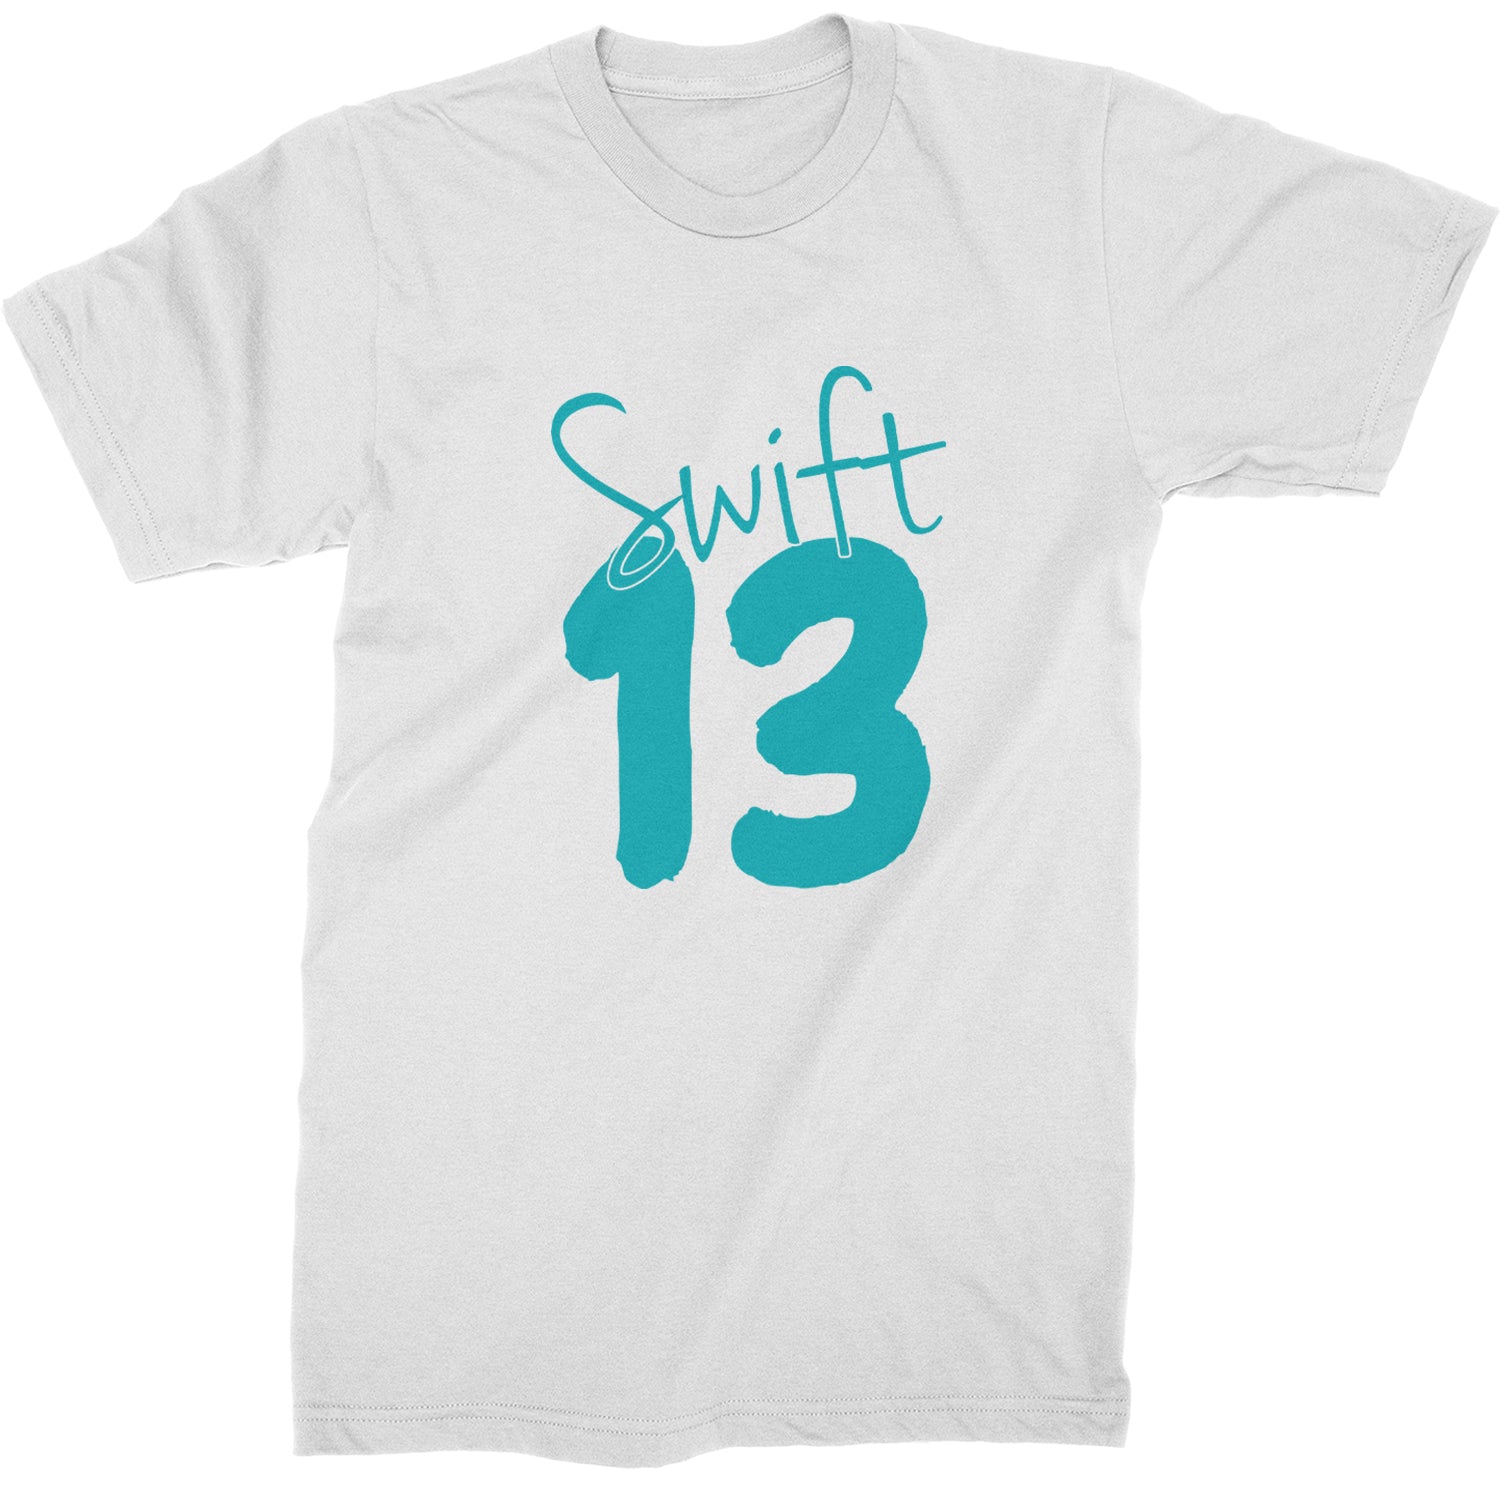 13 Swift 13 Lucky Number Era Mens T-shirt